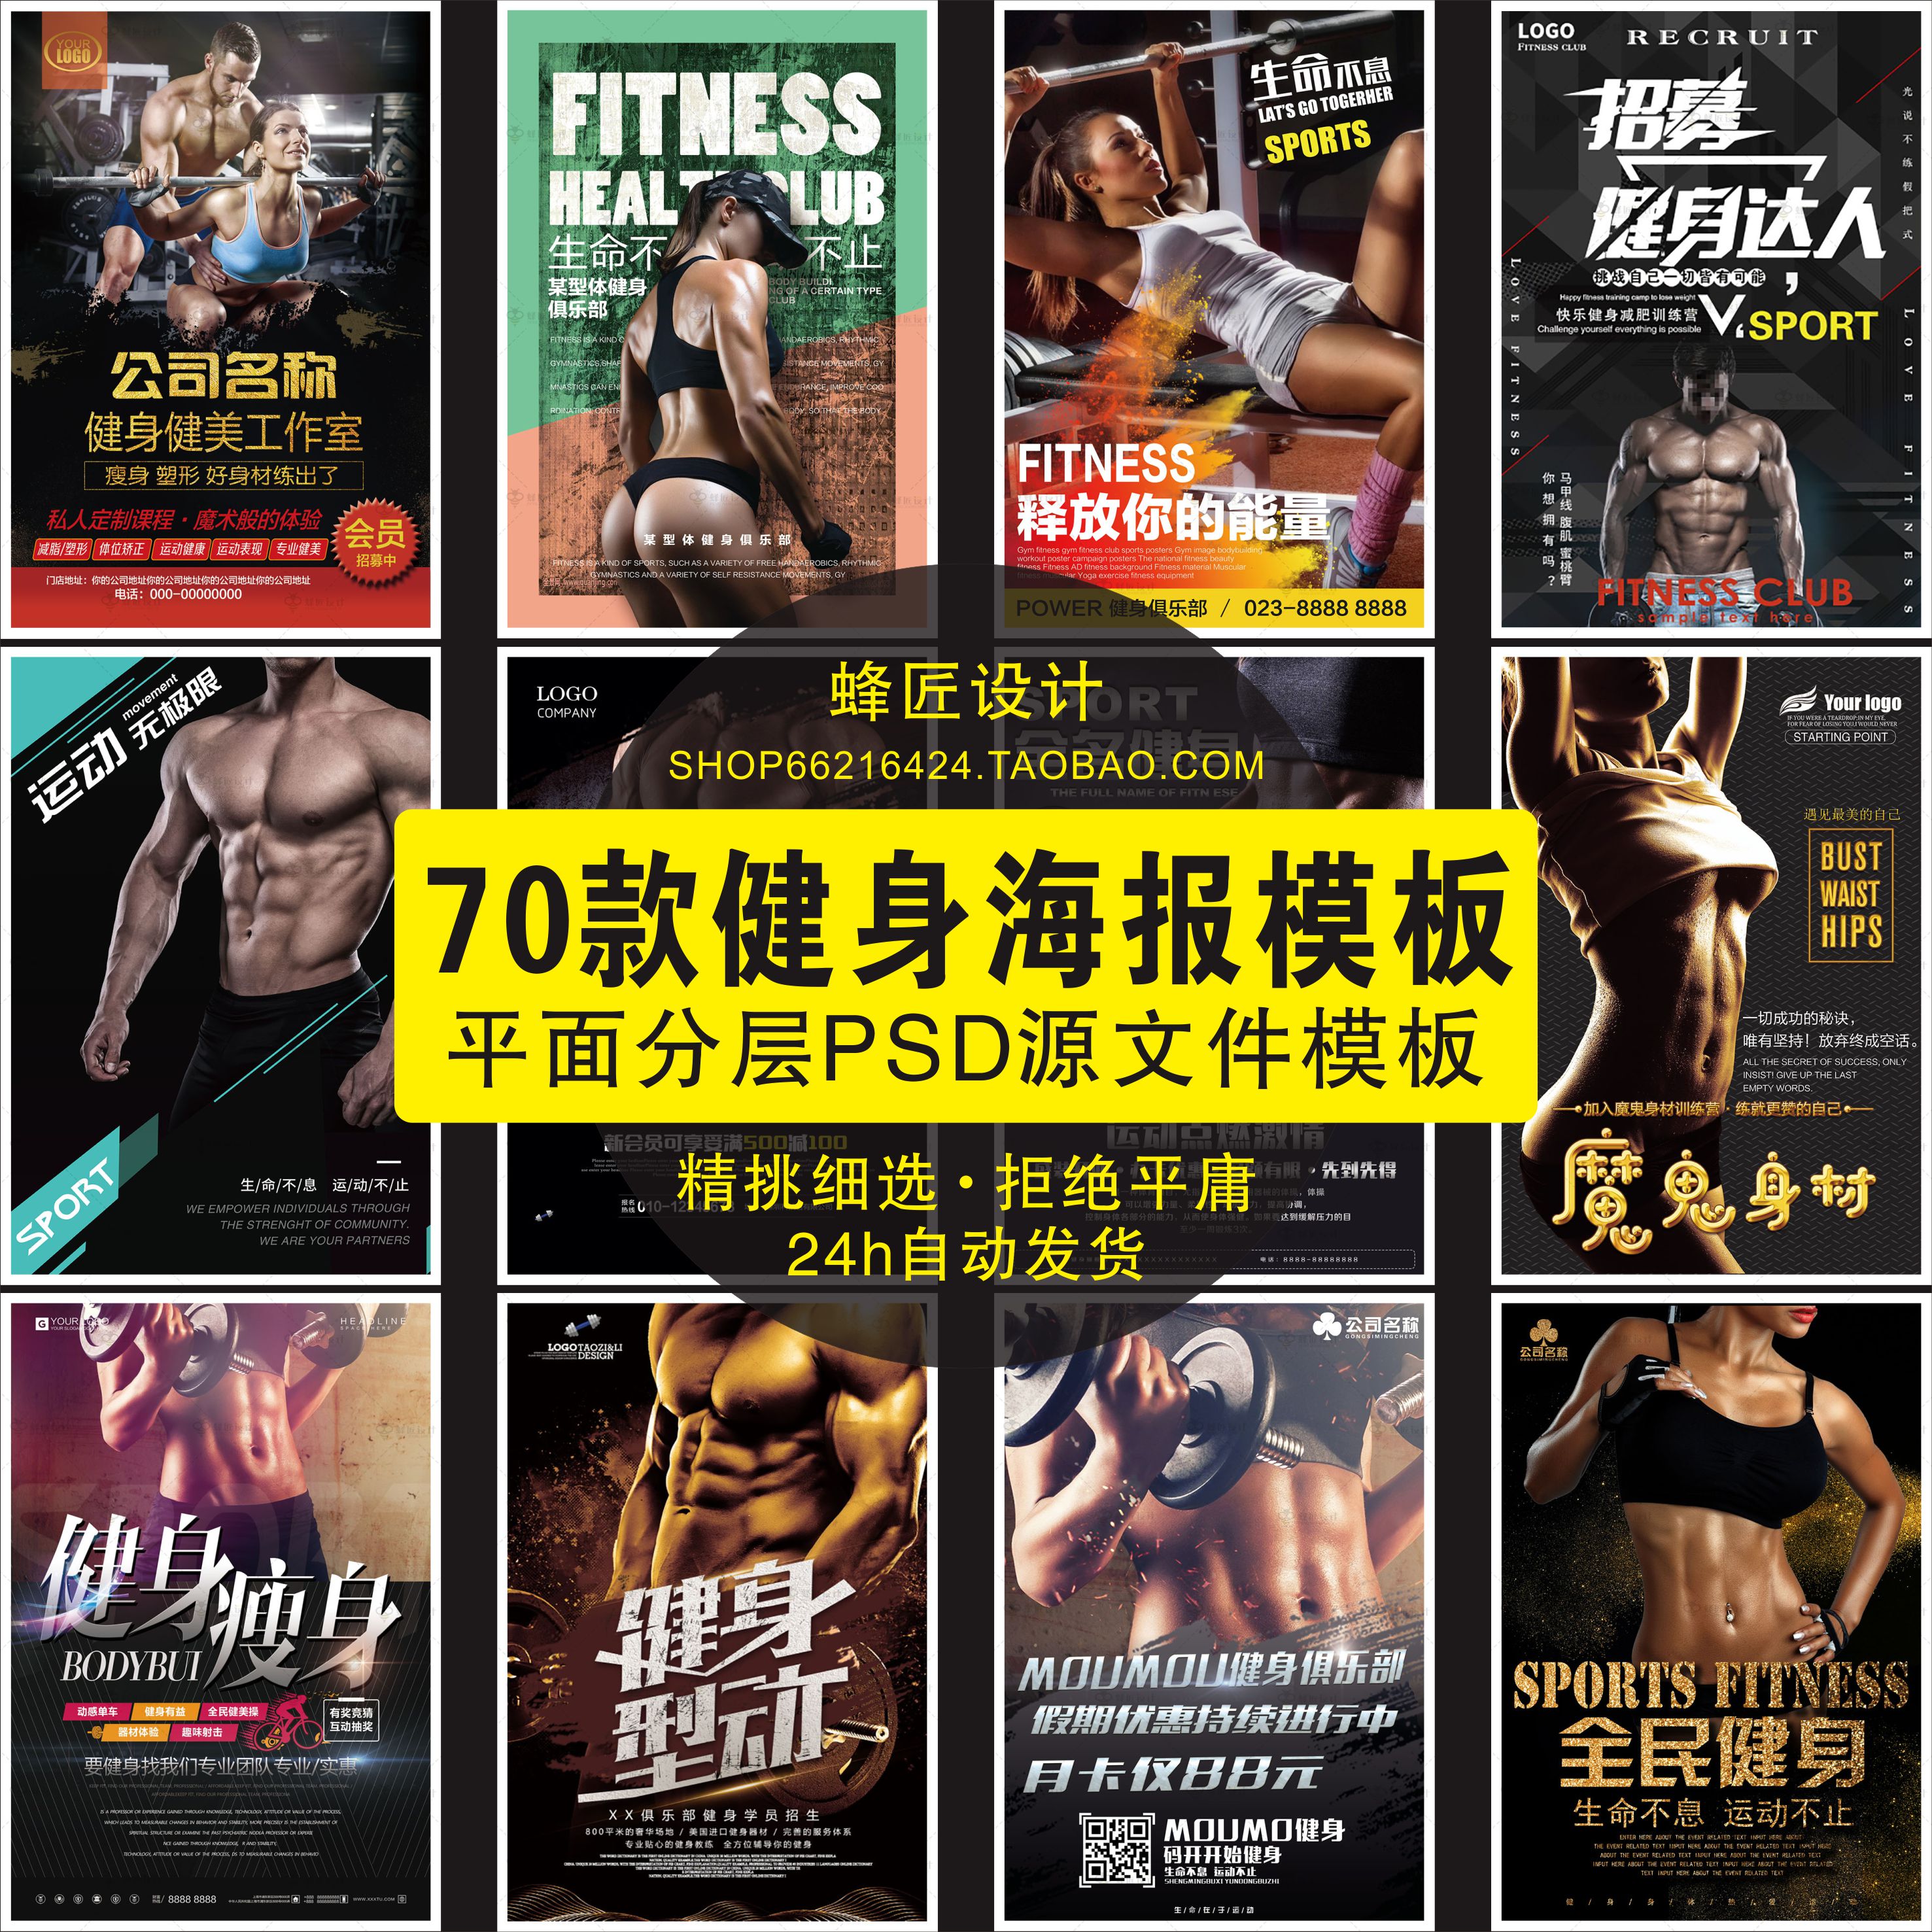 健身房运动馆俱乐部开业宣传单装饰画海报素材PSD设计模板A62